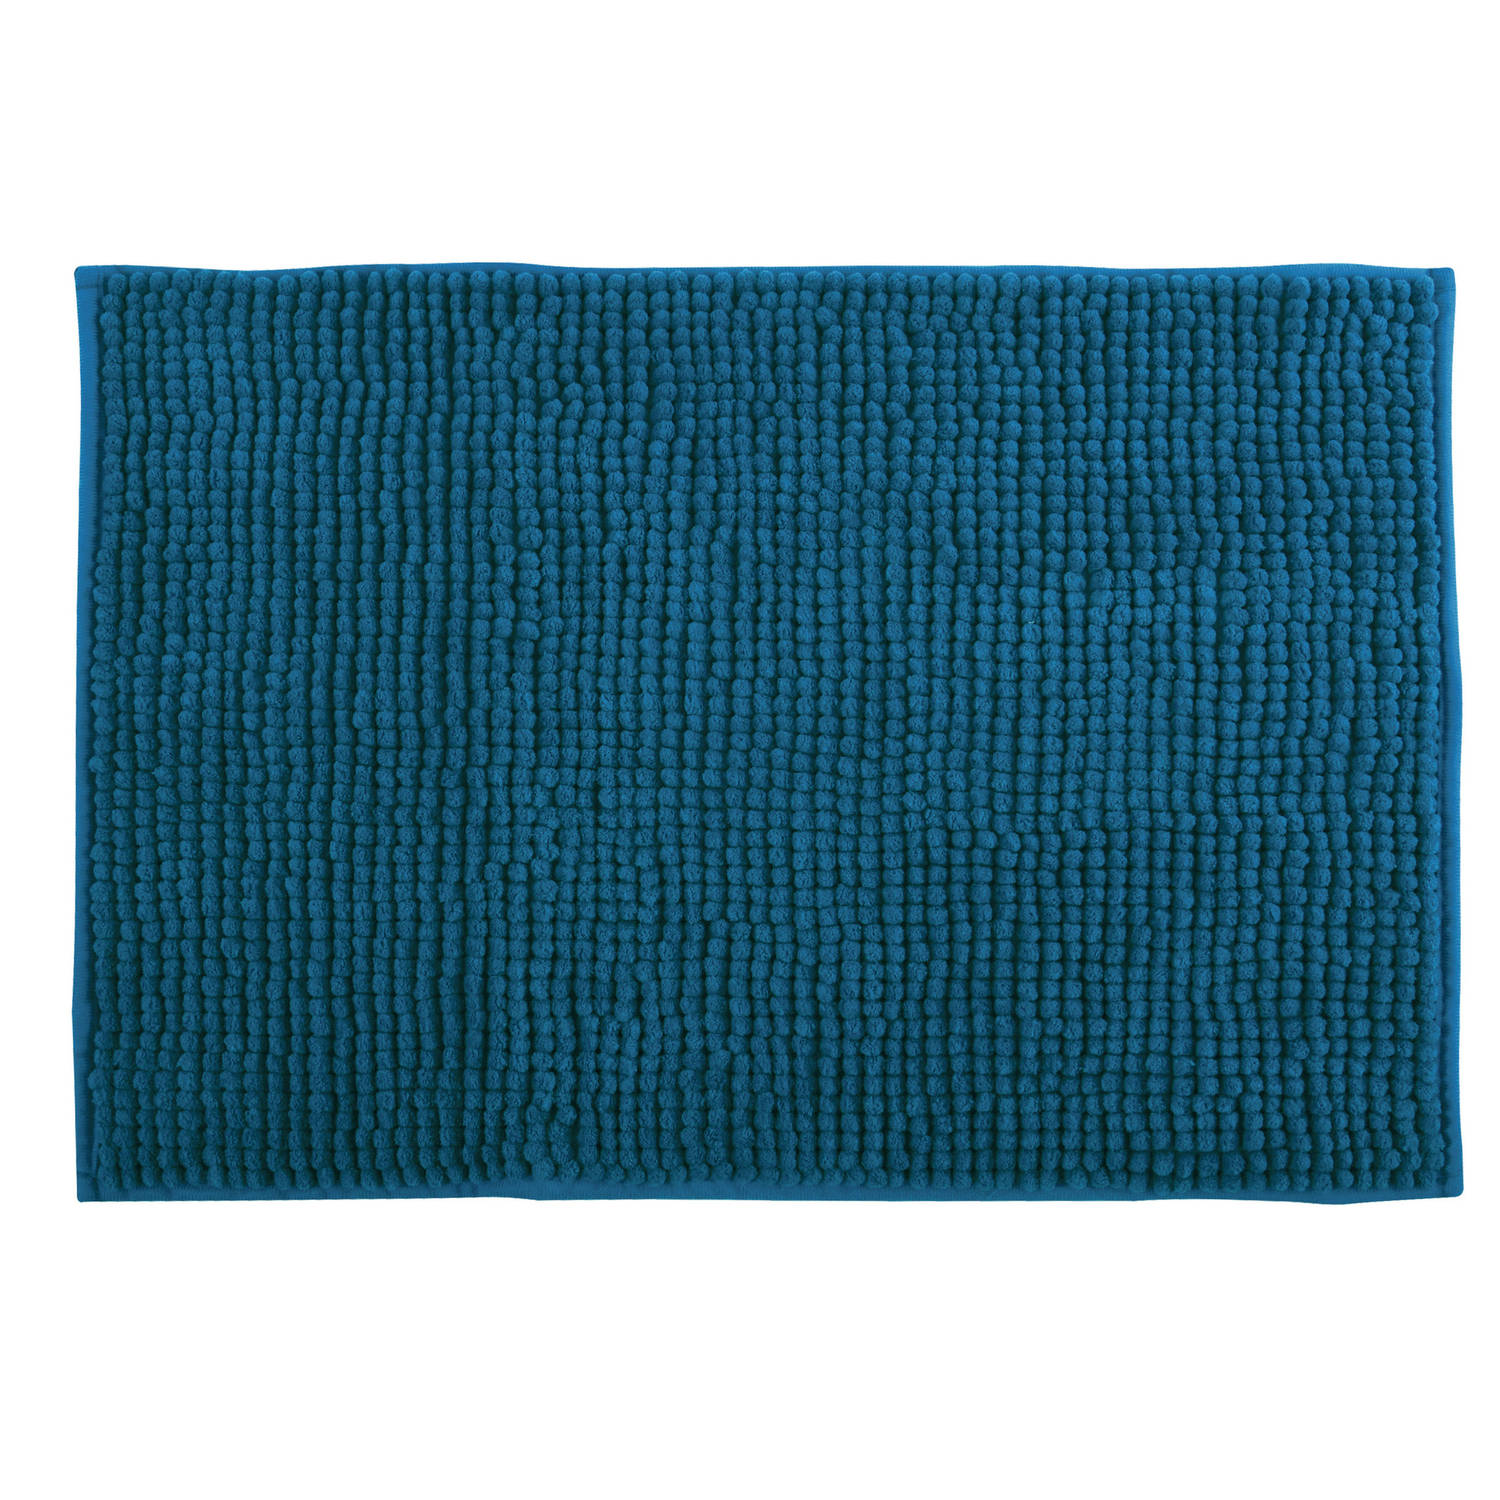 MSV Badkamerkleed/badmat tapijtje voor op de vloer - donkerblauw - 50 x 80 cm - Microvezel - anti slip